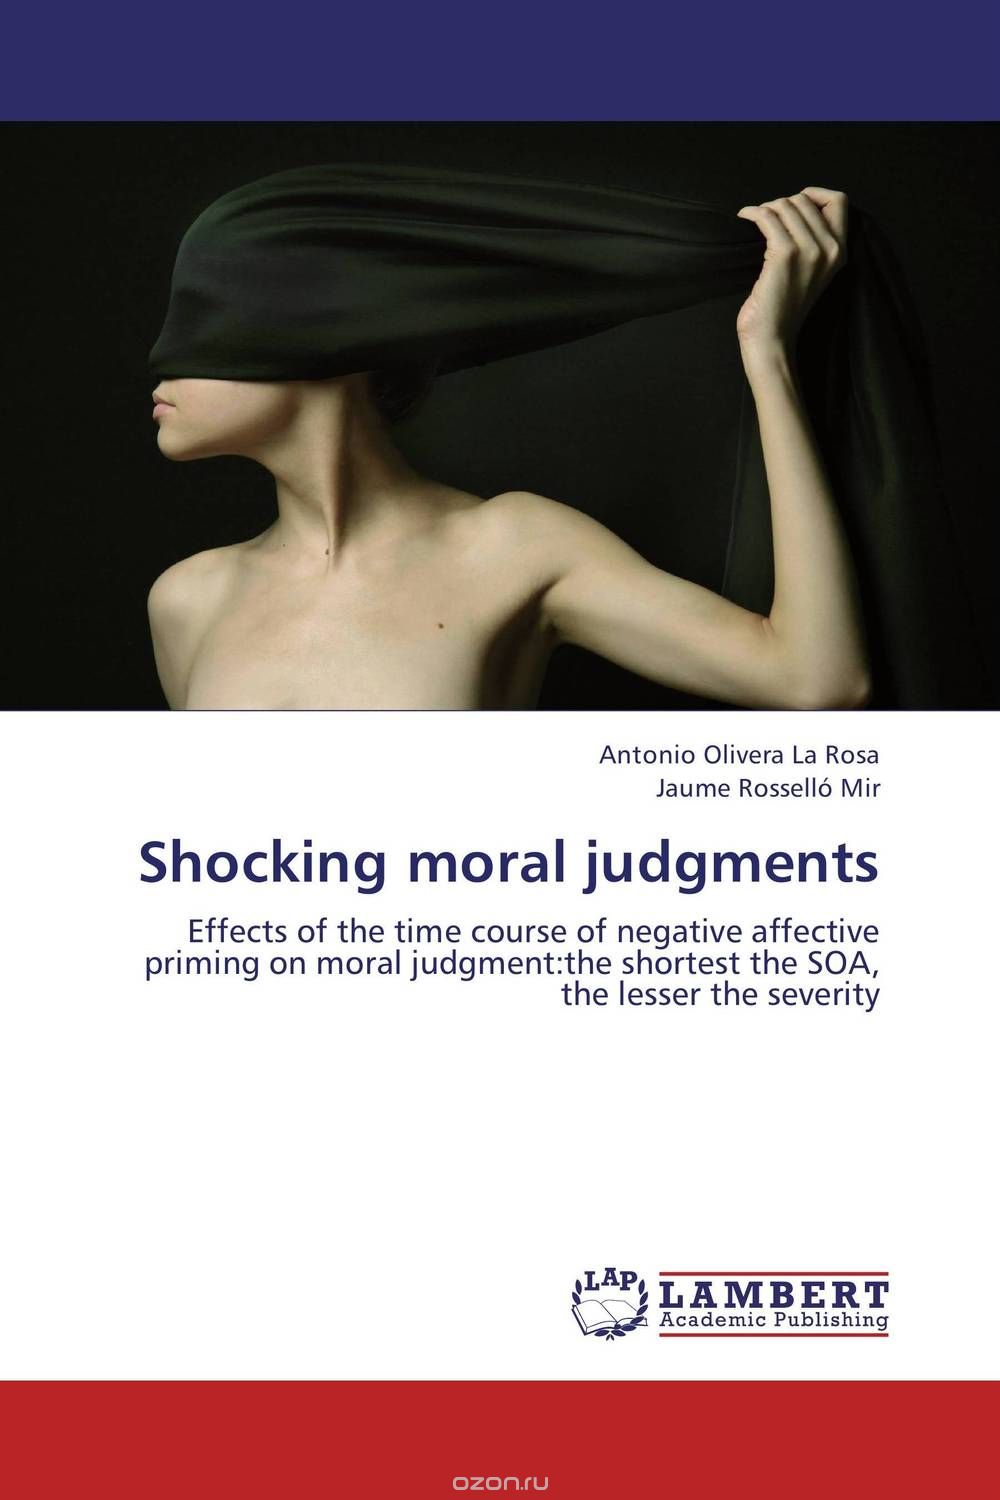 Скачать книгу "Shocking moral judgments"